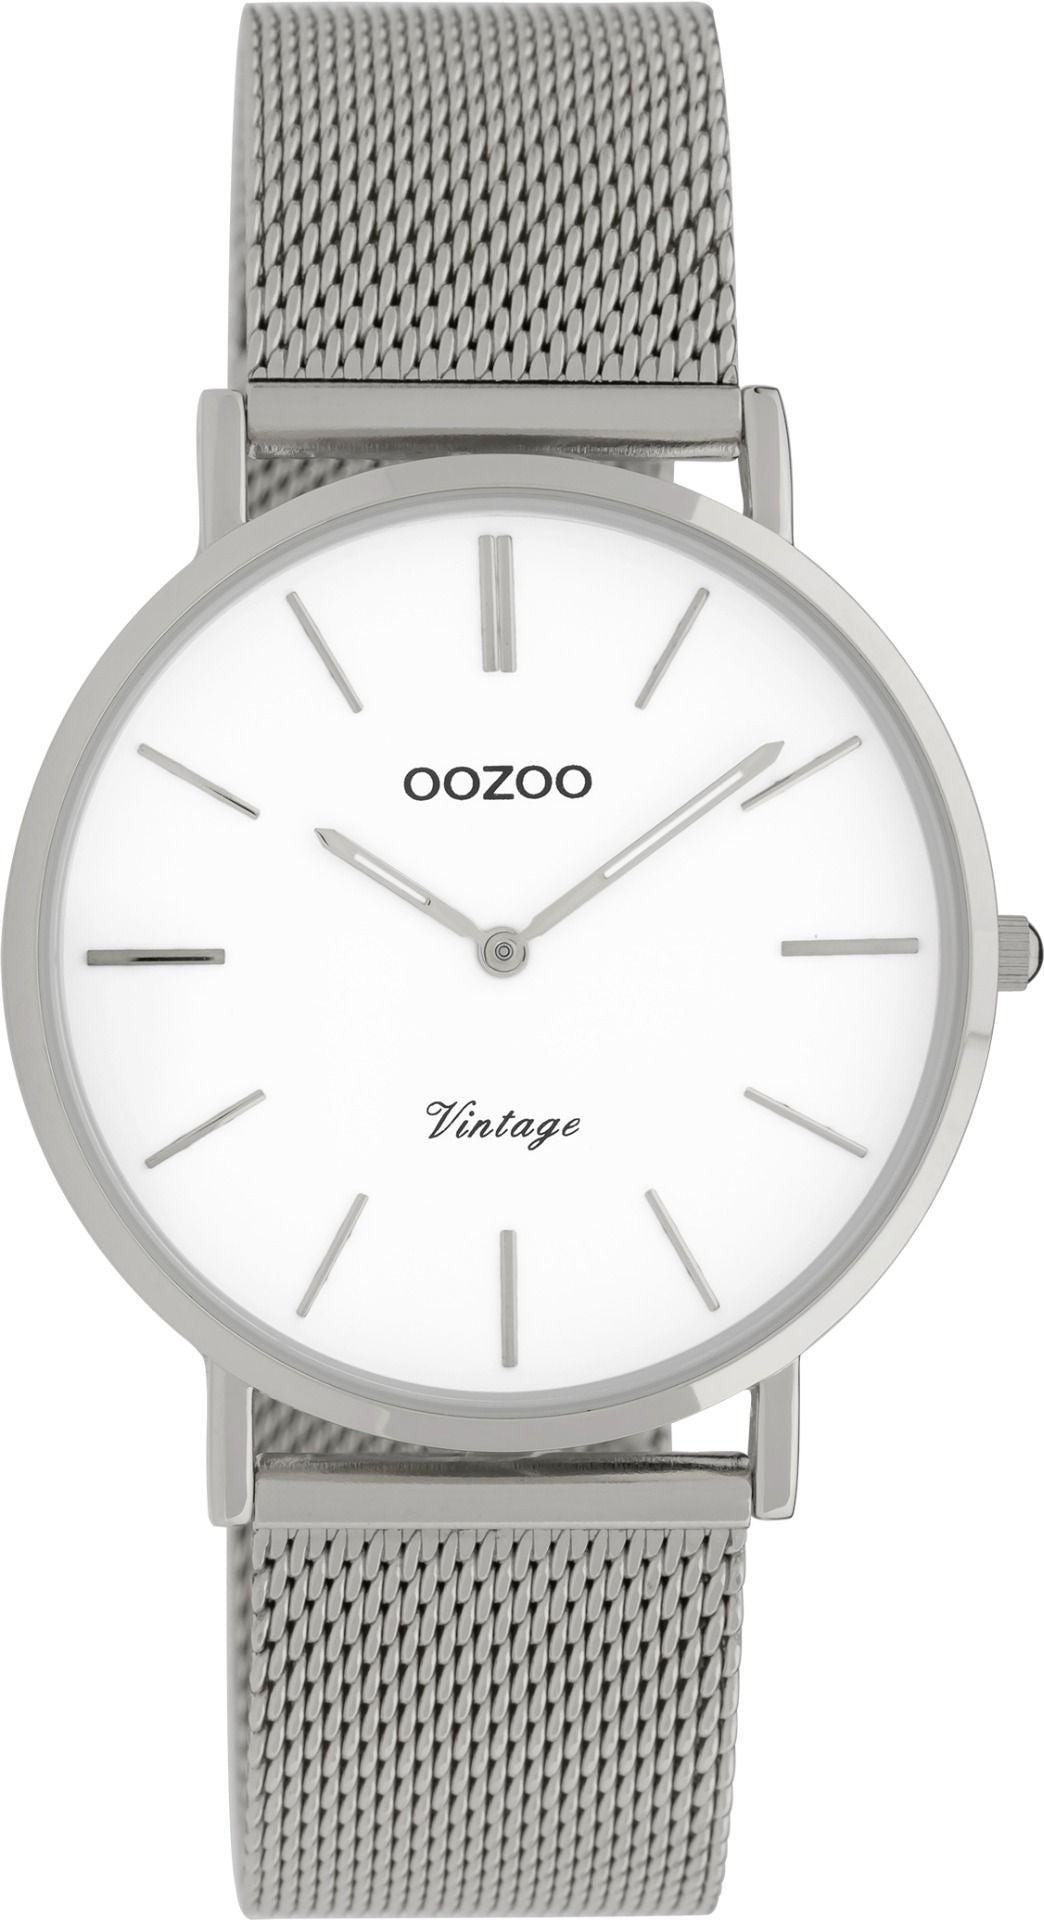 OOZOO Vintage 9902 - 36mm